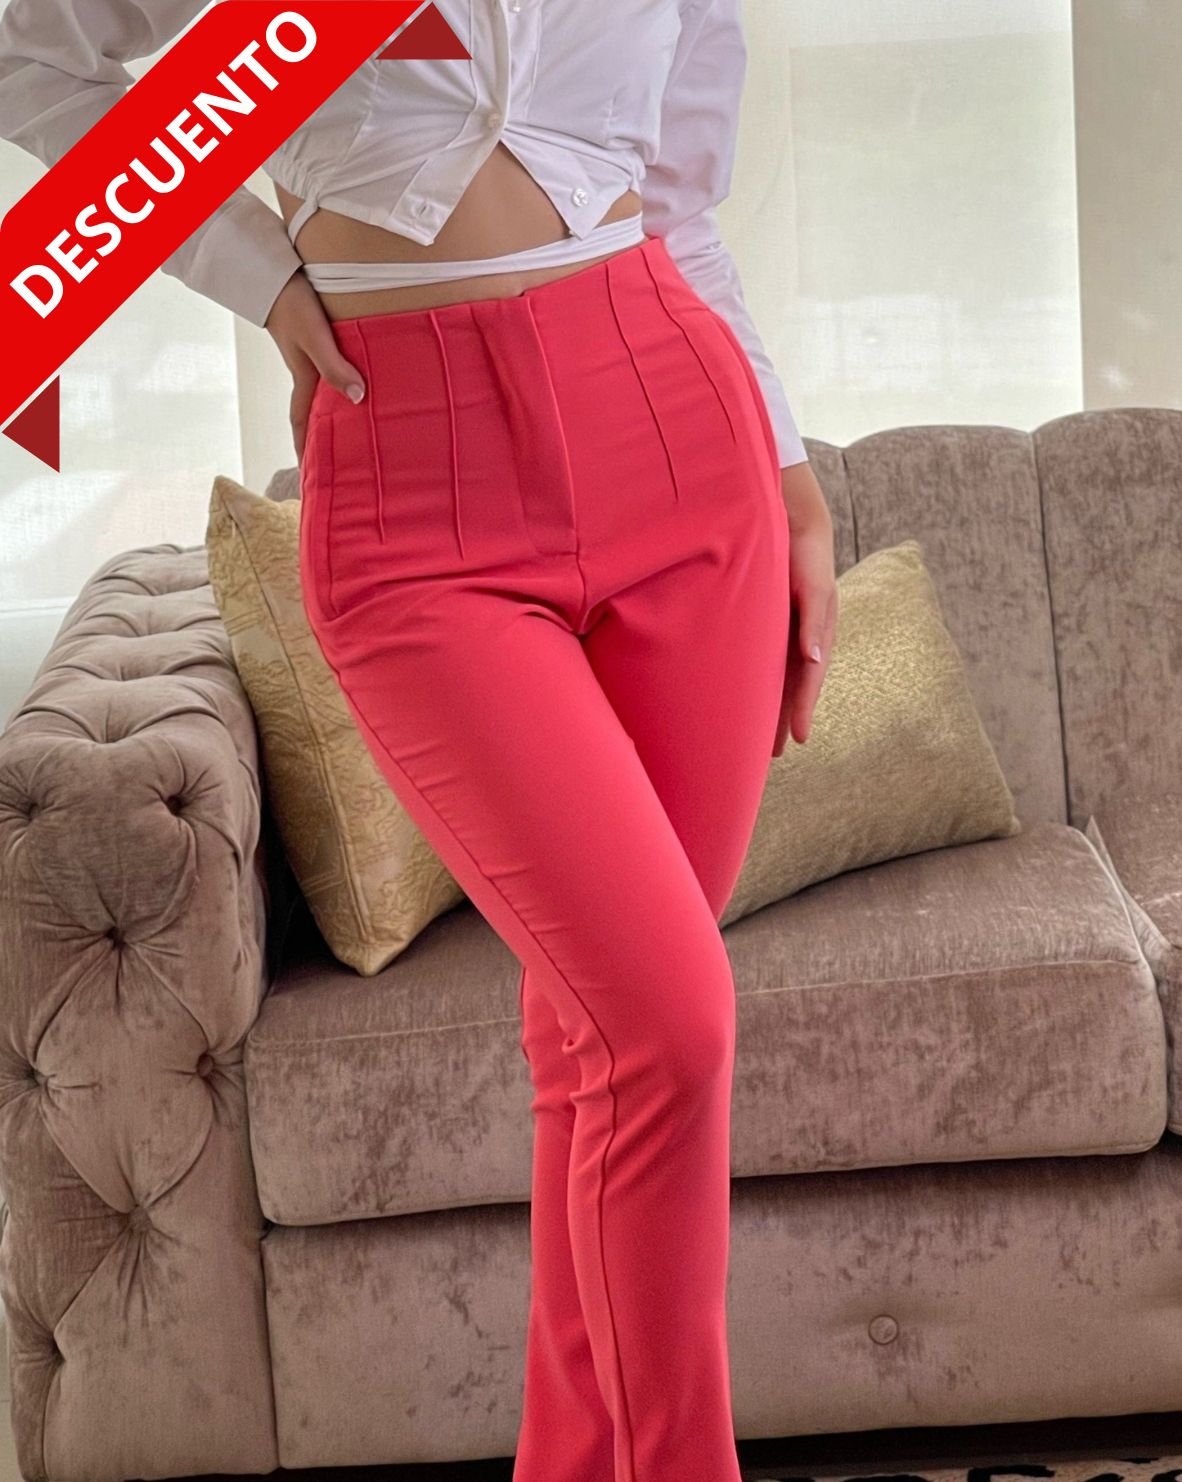 Pantalón coral de talle alto para mujer, ideal para un look moderno y elegante.